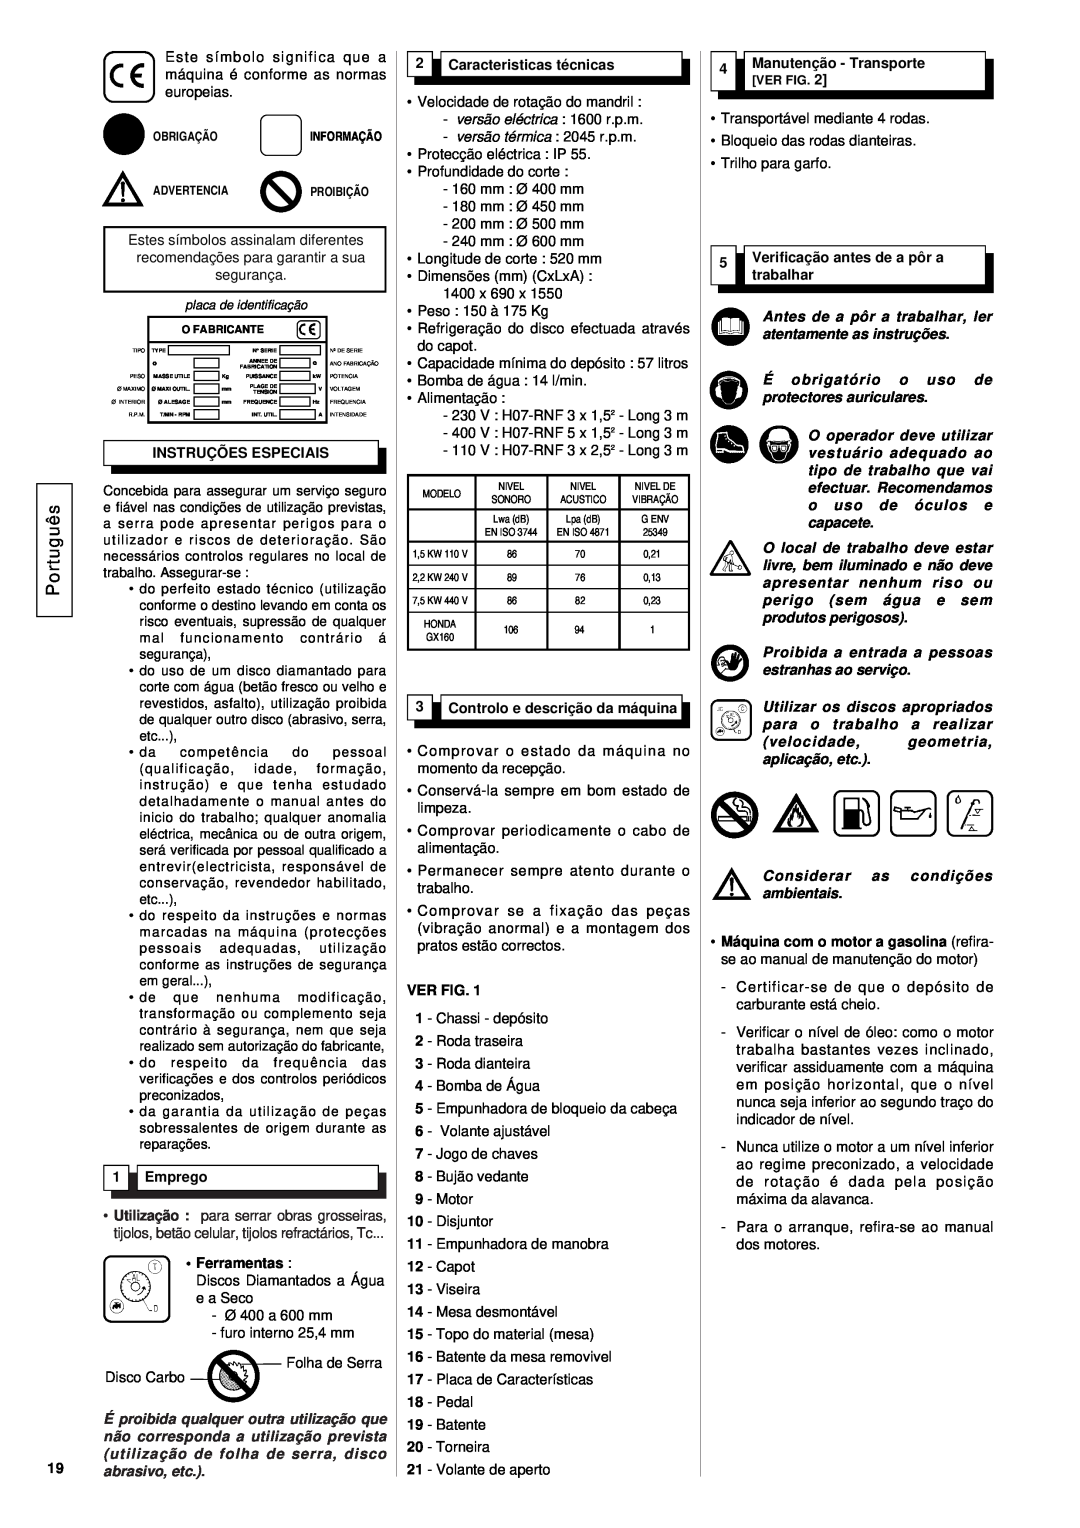 Husqvarna TS 600 M Português, Instruções Especiais, Emprego, Caracteristicas técnicas, Controlo e descrição da máquina 